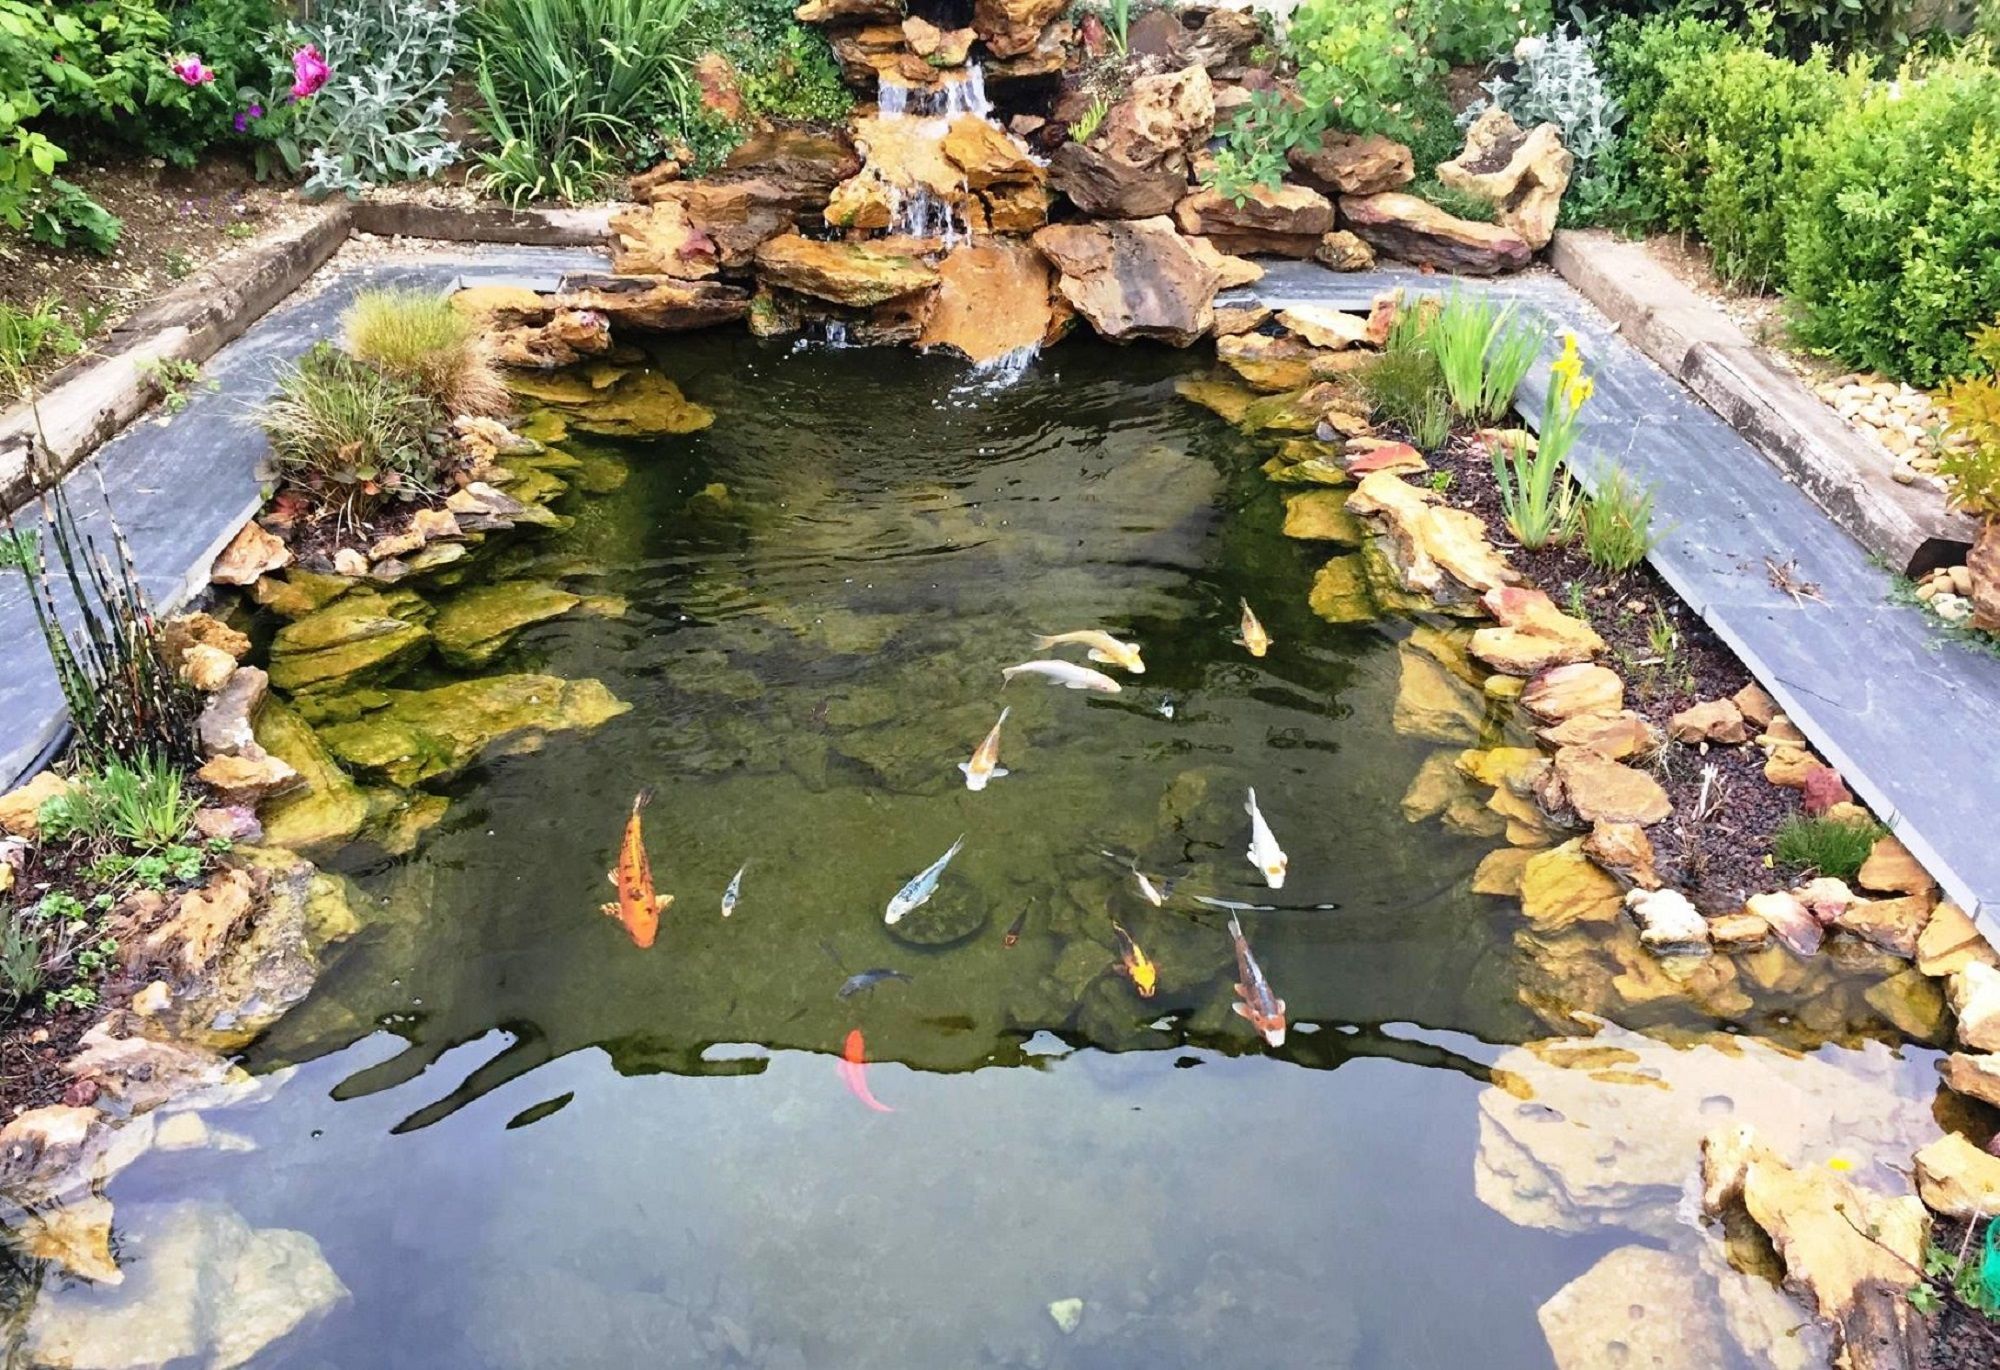 Bassin de jardin : quand introduire des poissons ?